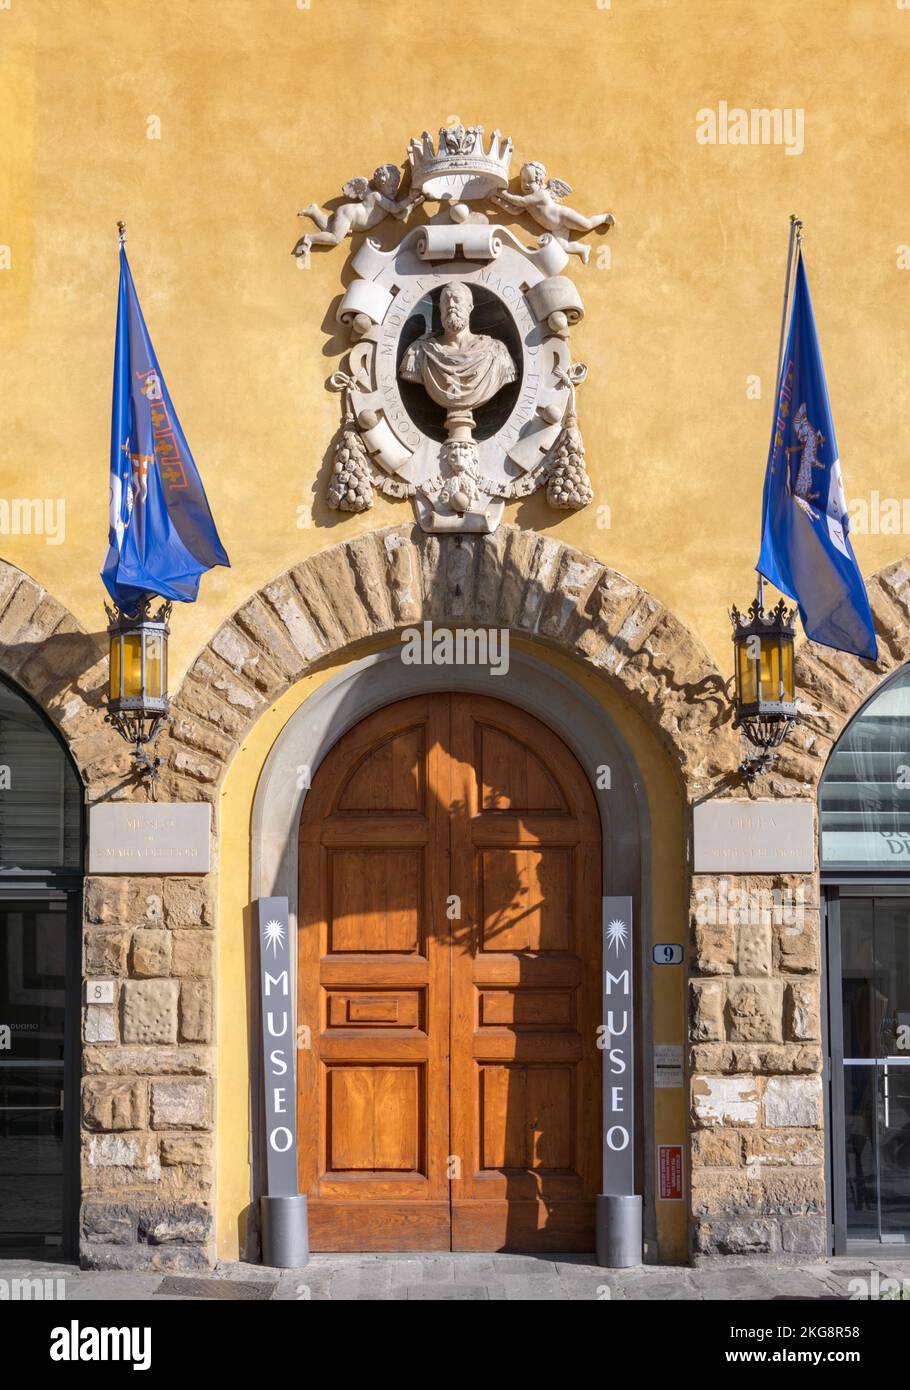 Musée extérieur de l'Opéra del Duomo, Florence, Italie Banque D'Images